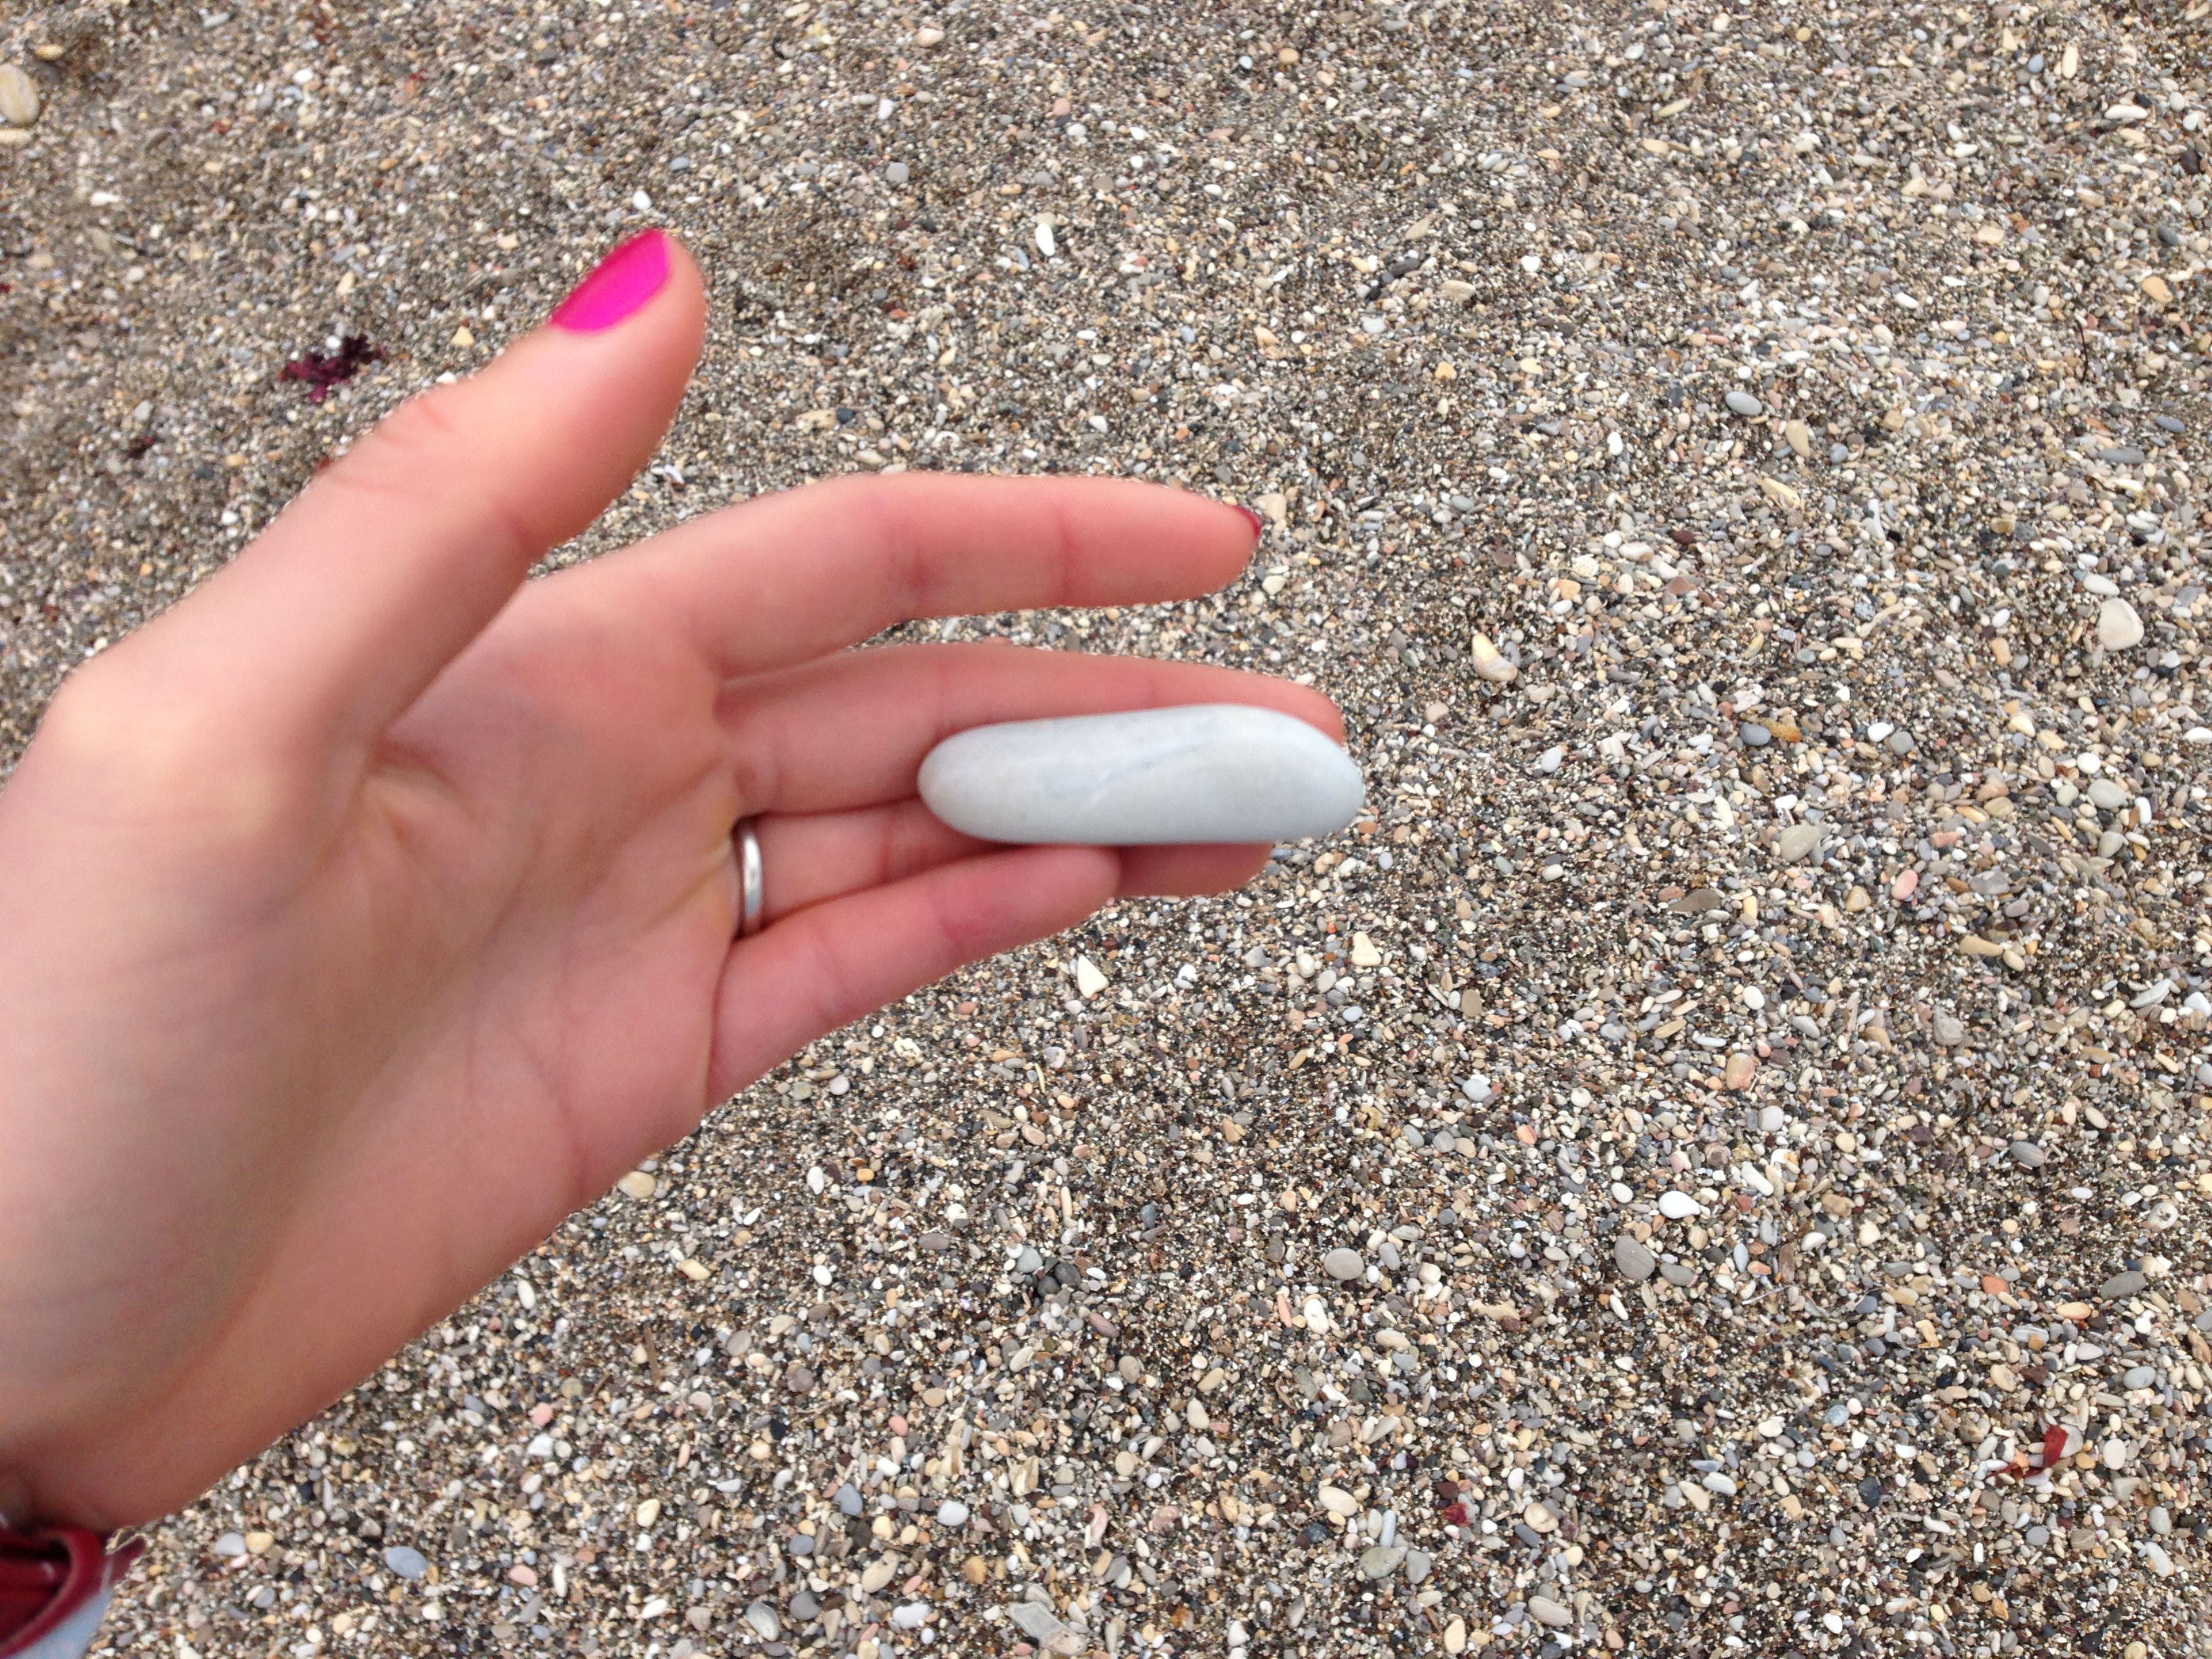 Bizarre fingerlet shell/sea object